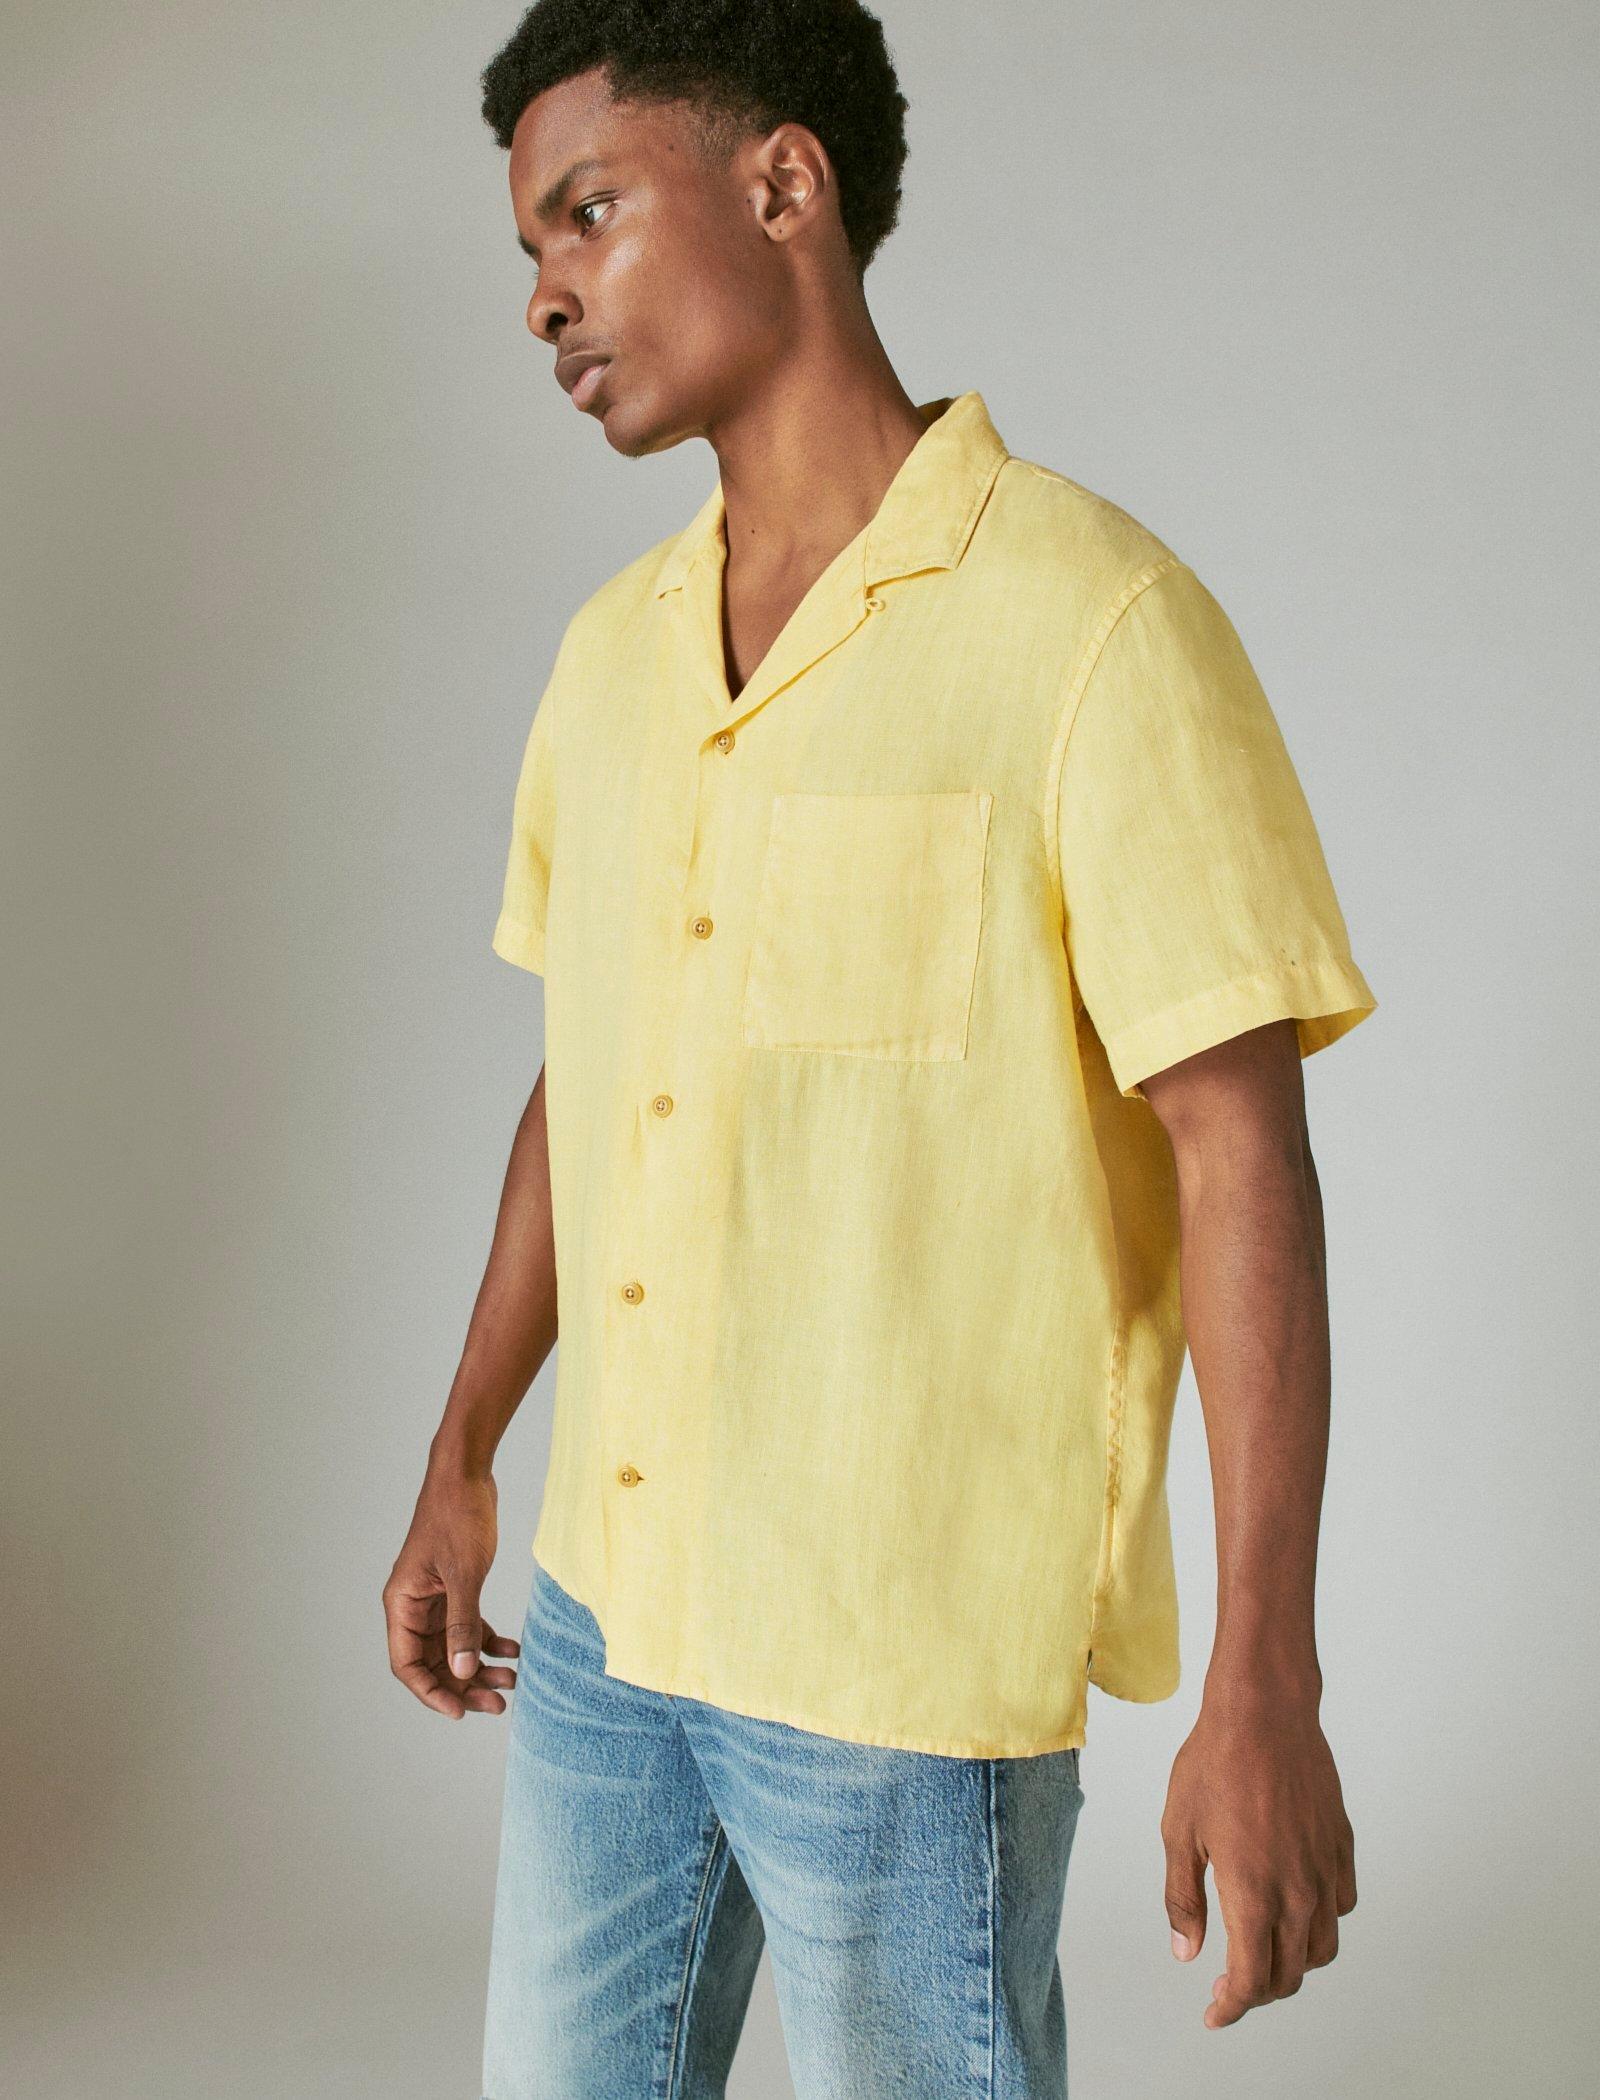 Lucky Brand Hemp Camp Collar Short Sleeve Shirt in Yellow for Men